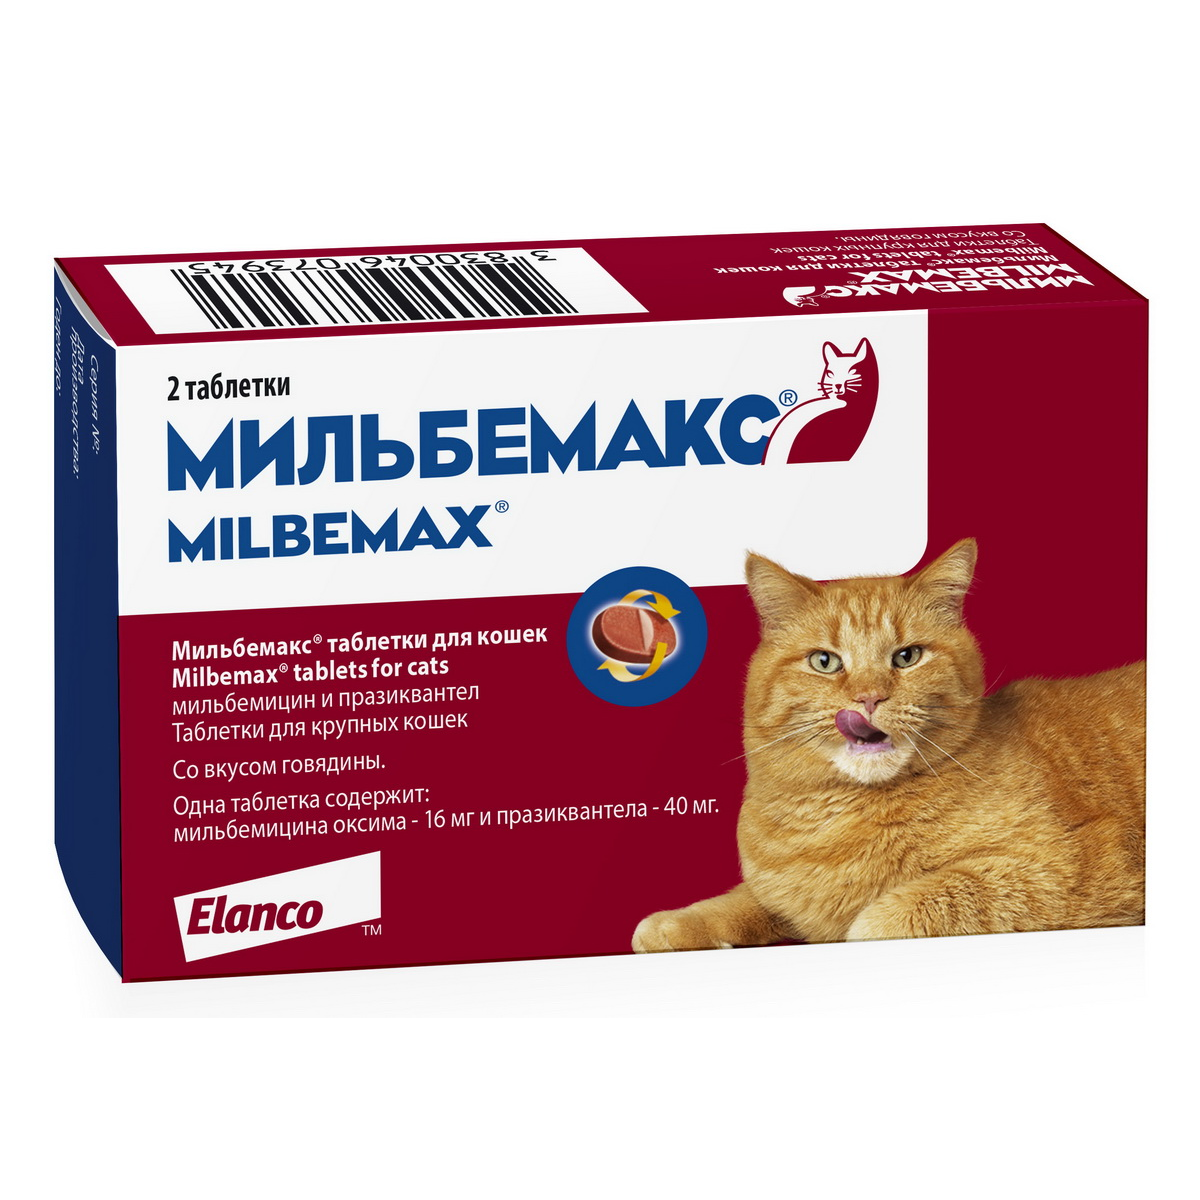 антигельминтик Elanco для кошки